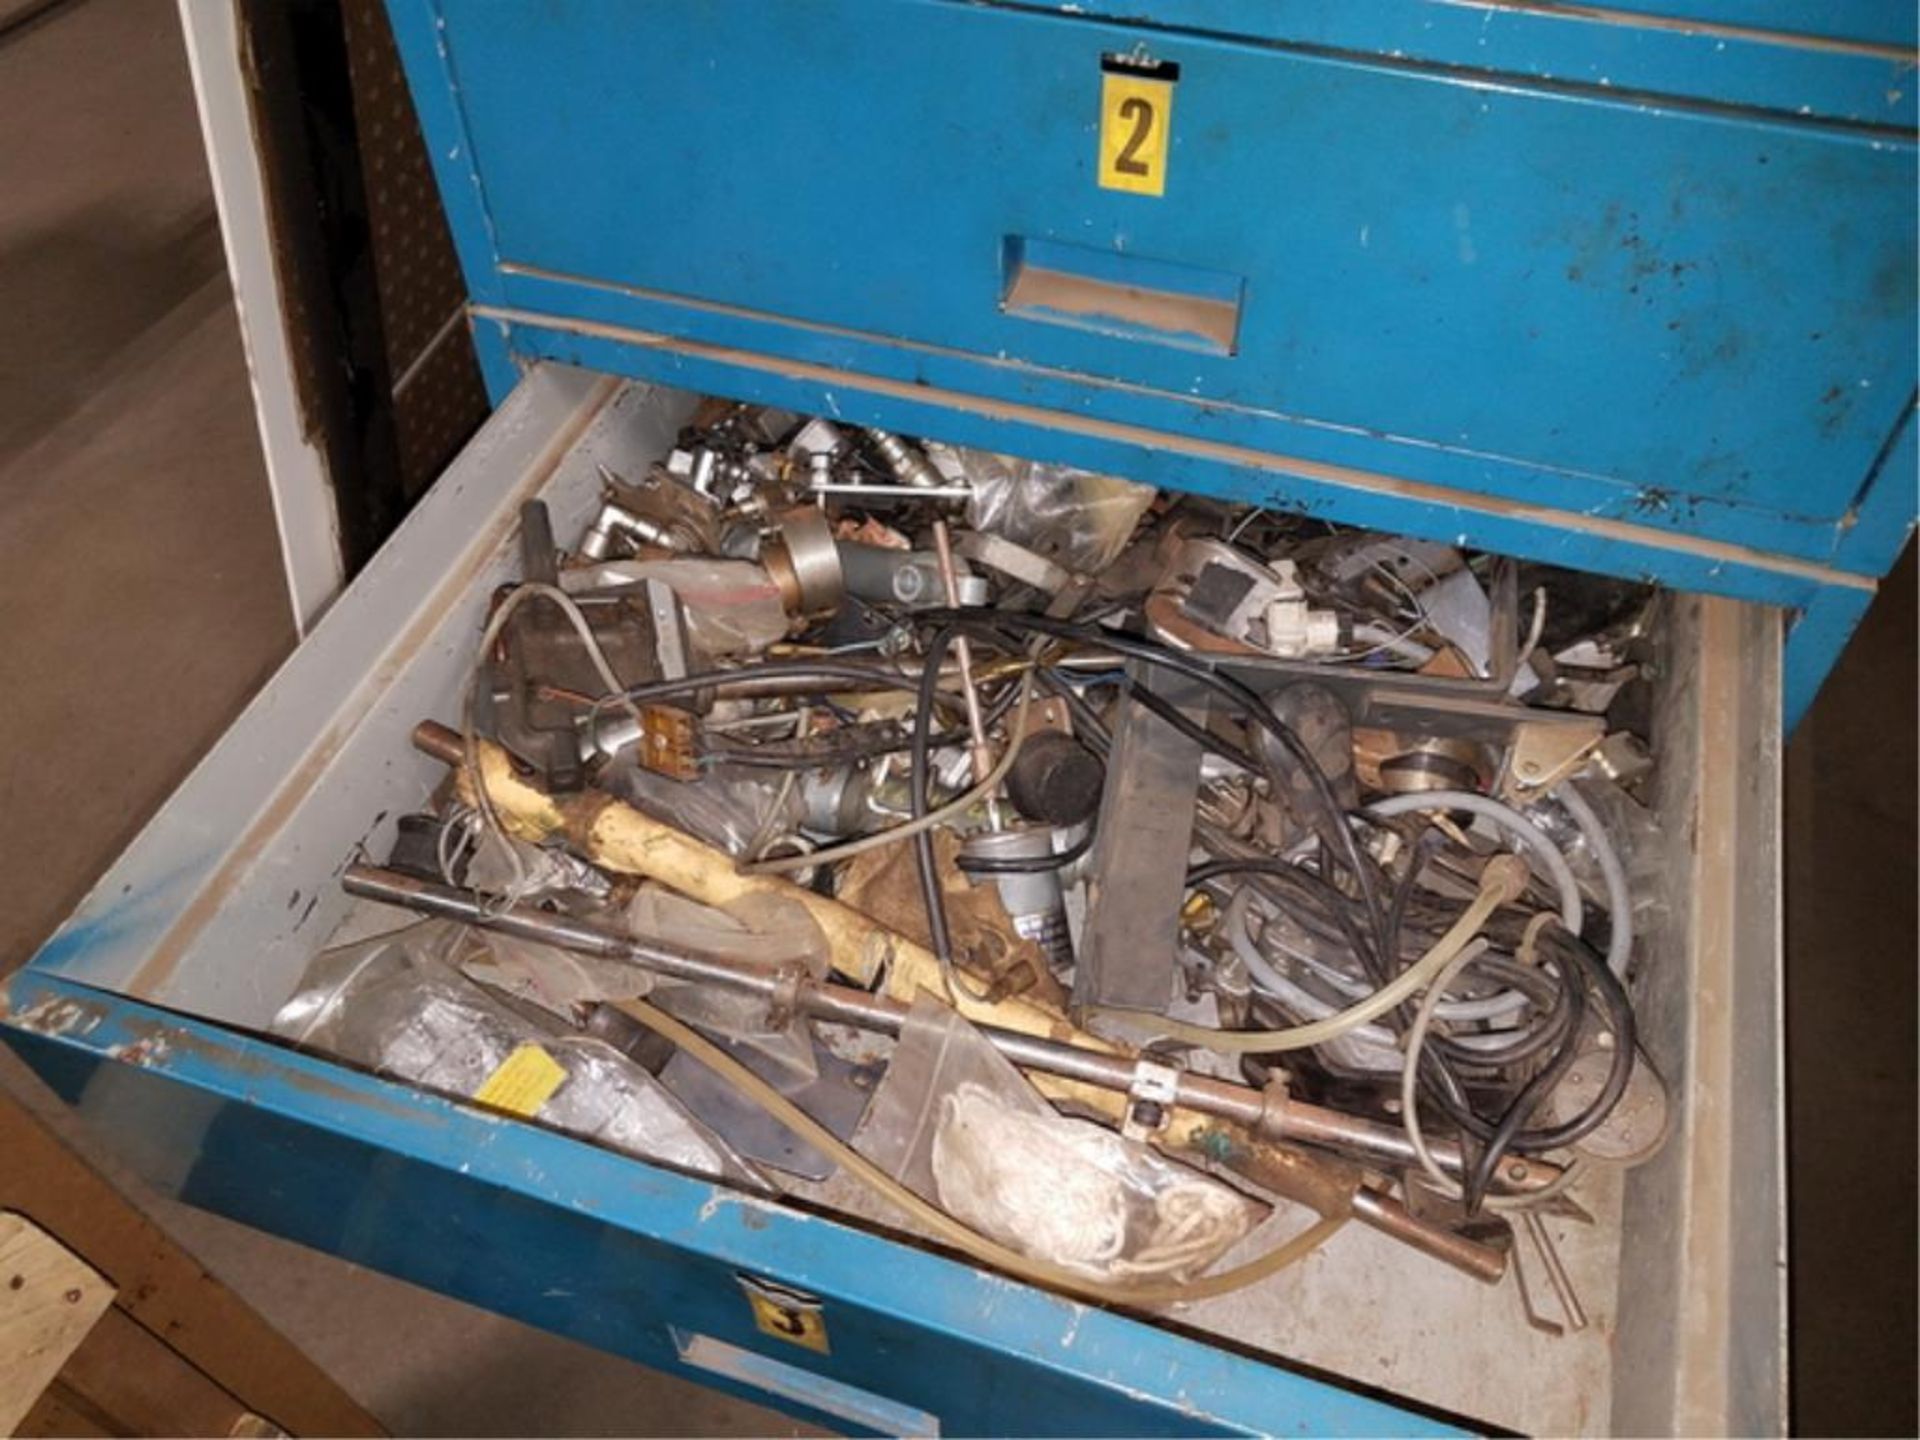 Air Tool Repair Parts - Image 23 of 27